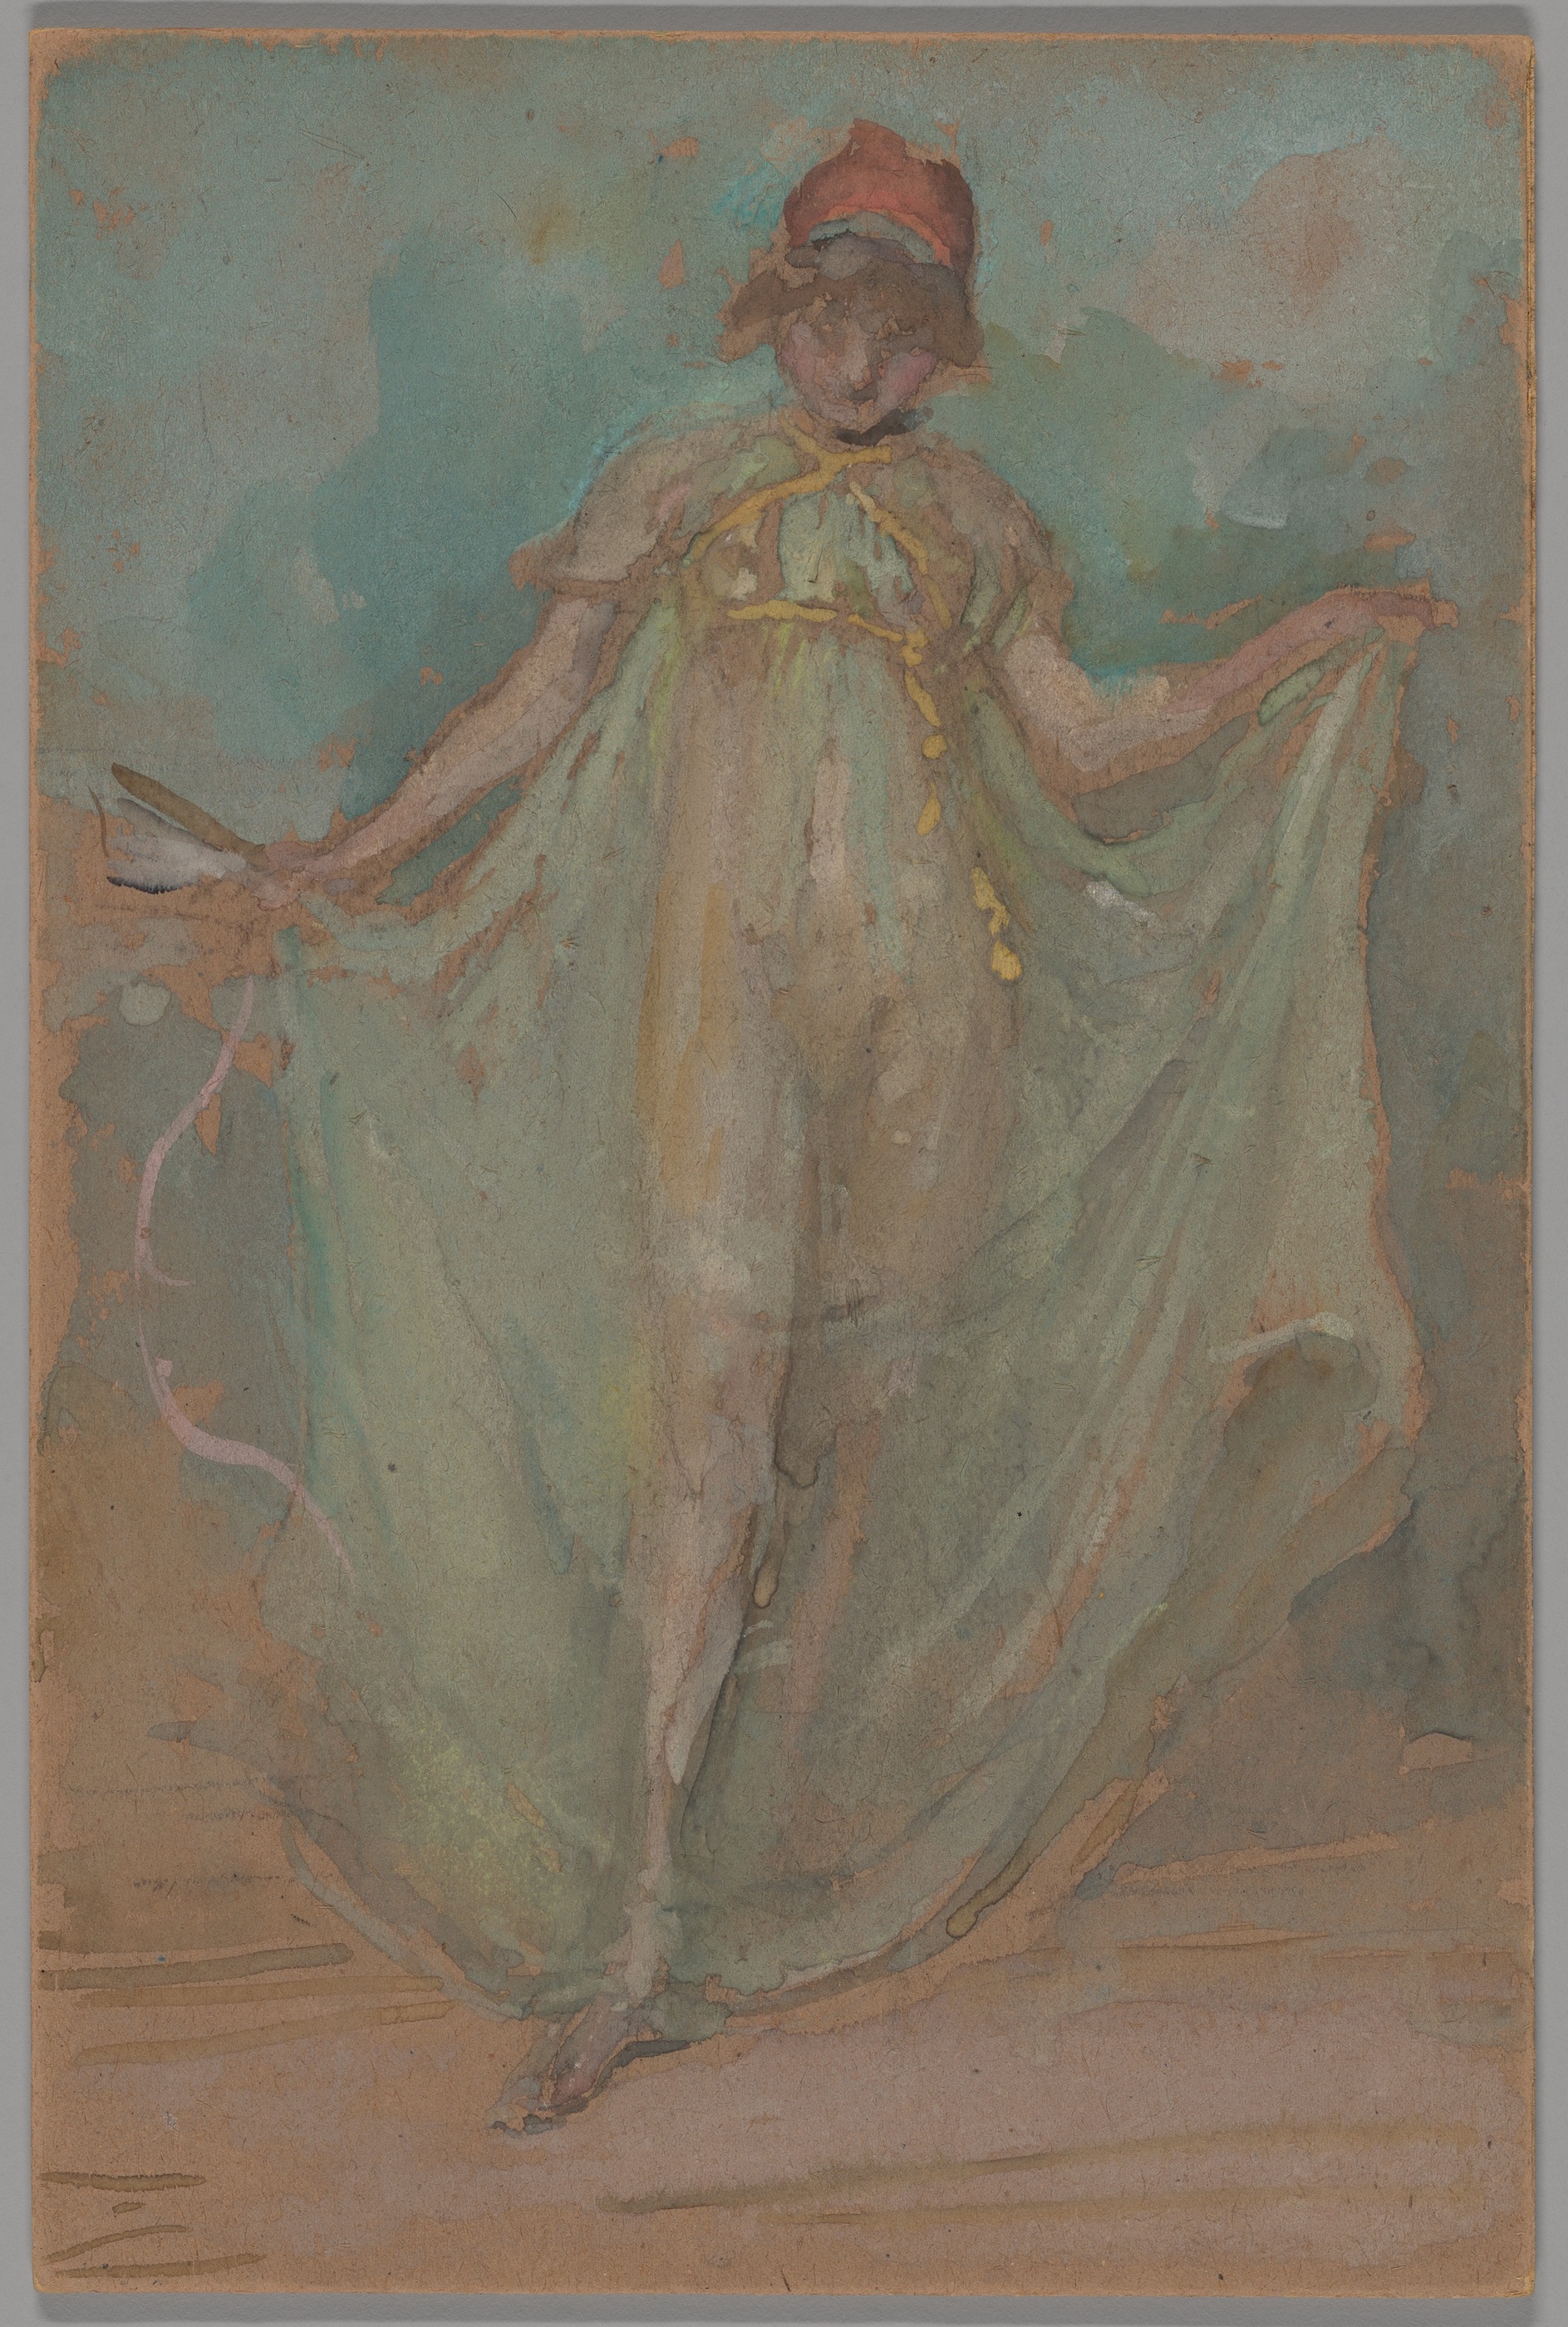 Grönt och blått: Dansaren by James Abbott McNeill Whistler - ca. 1893 - 27,5 × 18,3 cm 